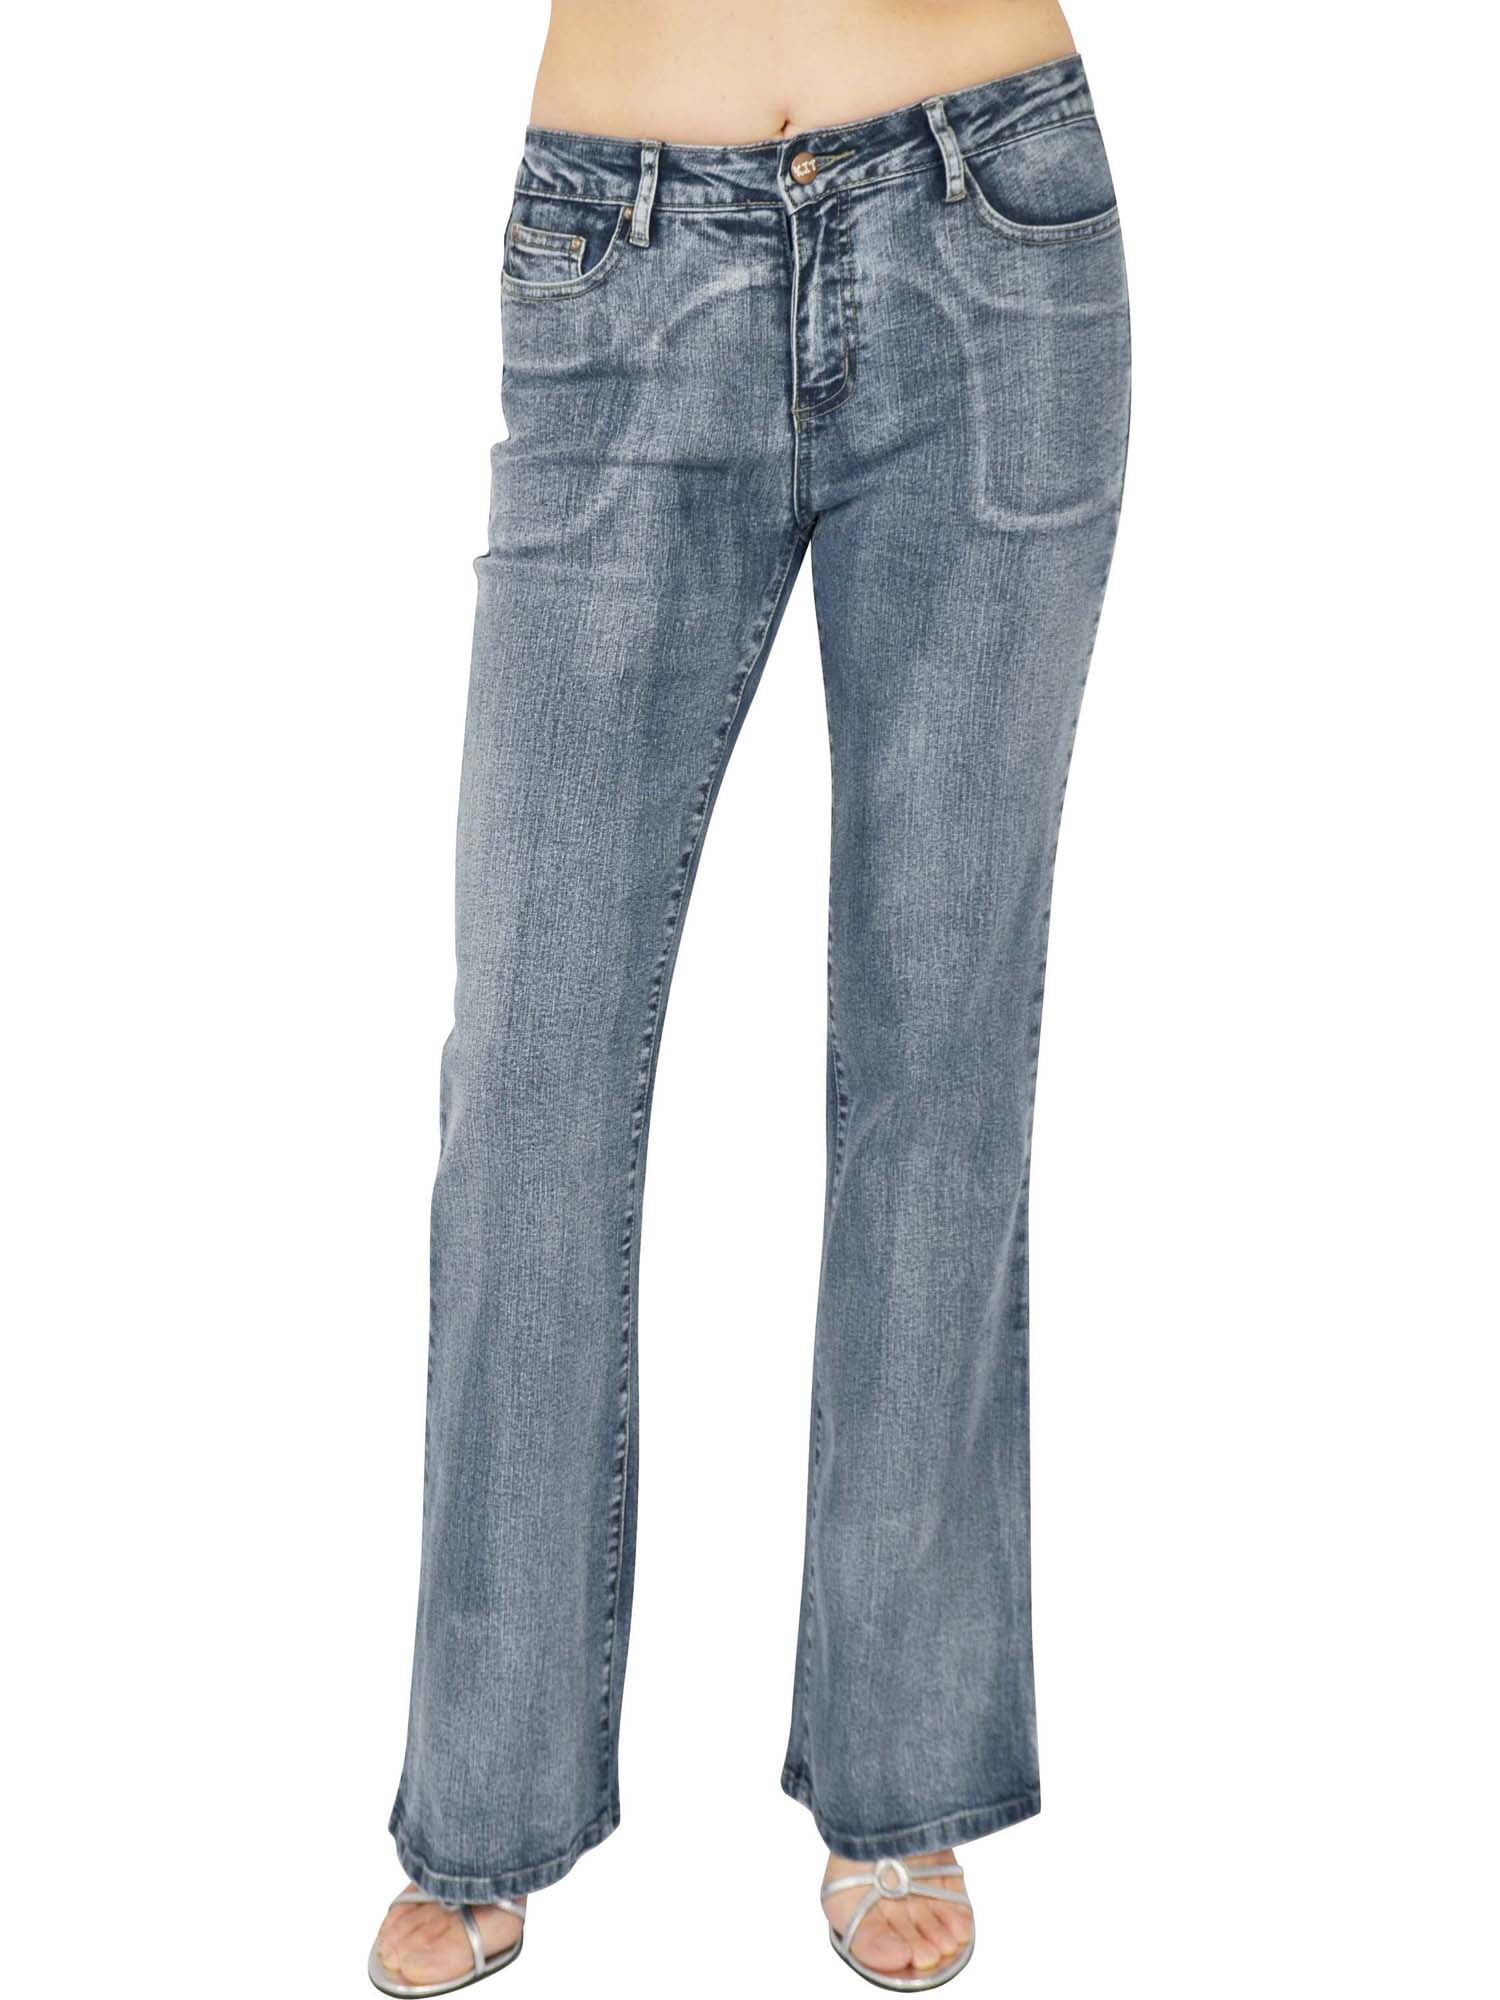 walmart stretch jeans